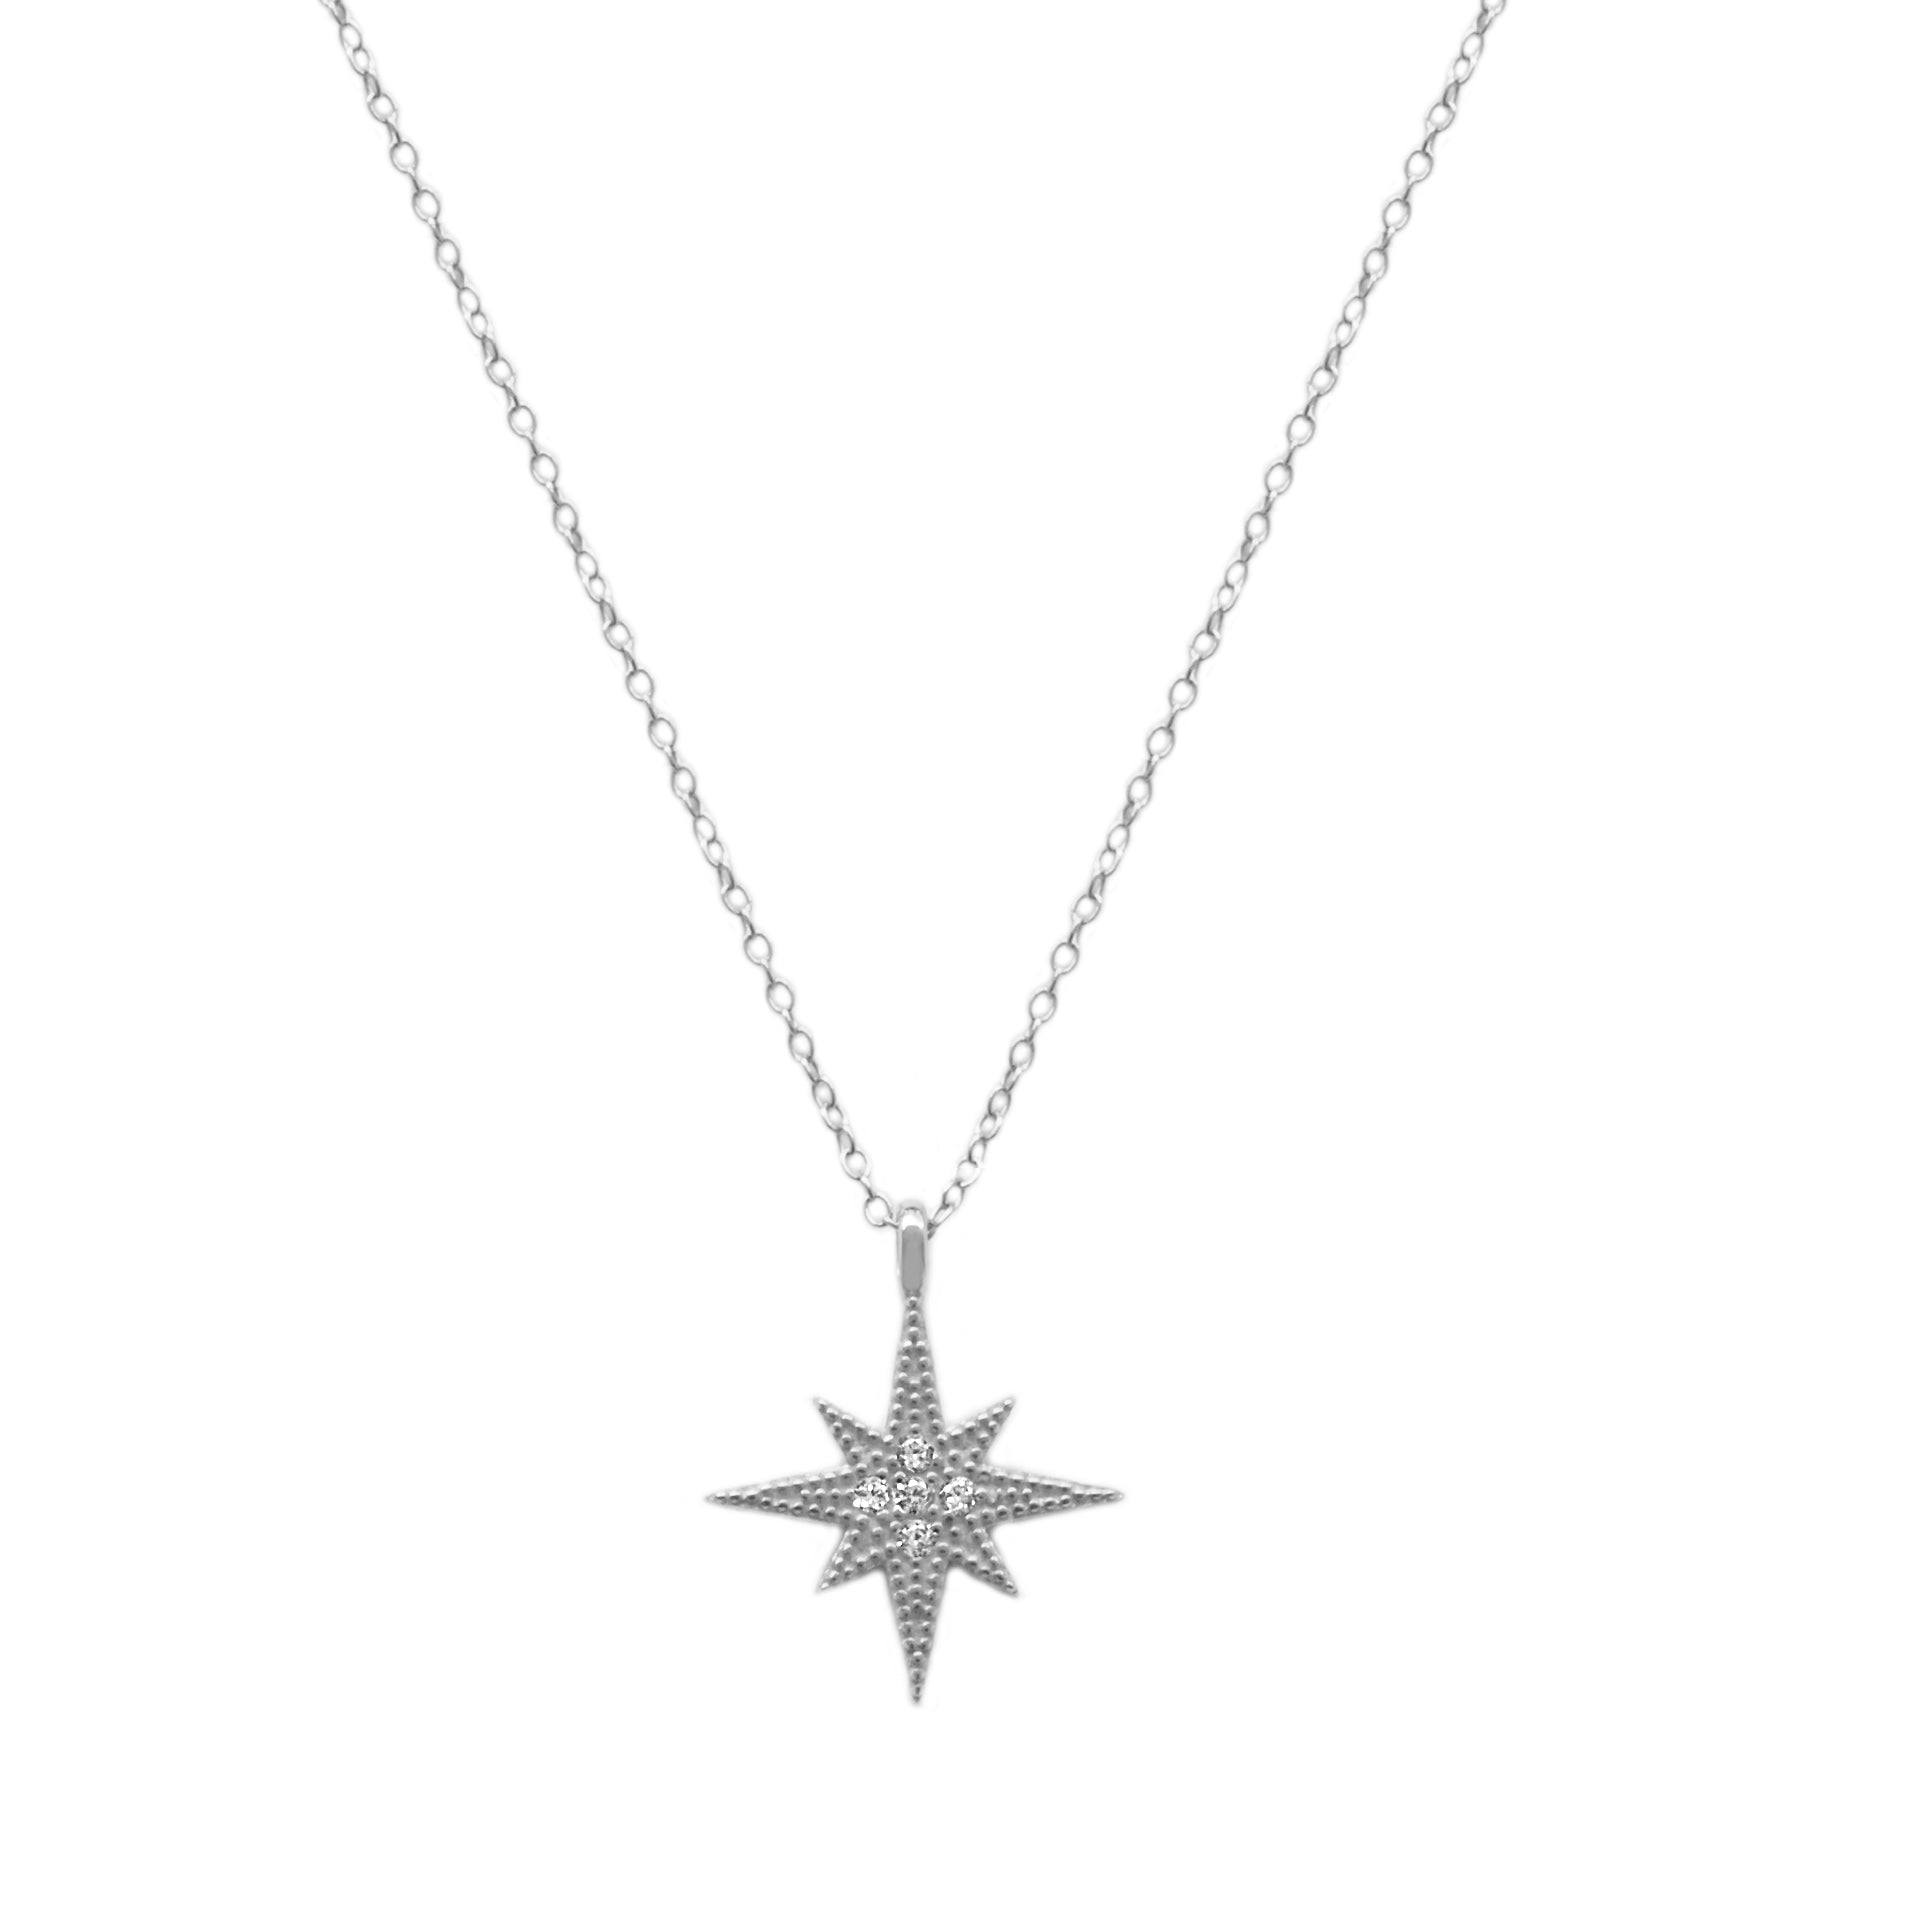 Big star silver - ByMirelae